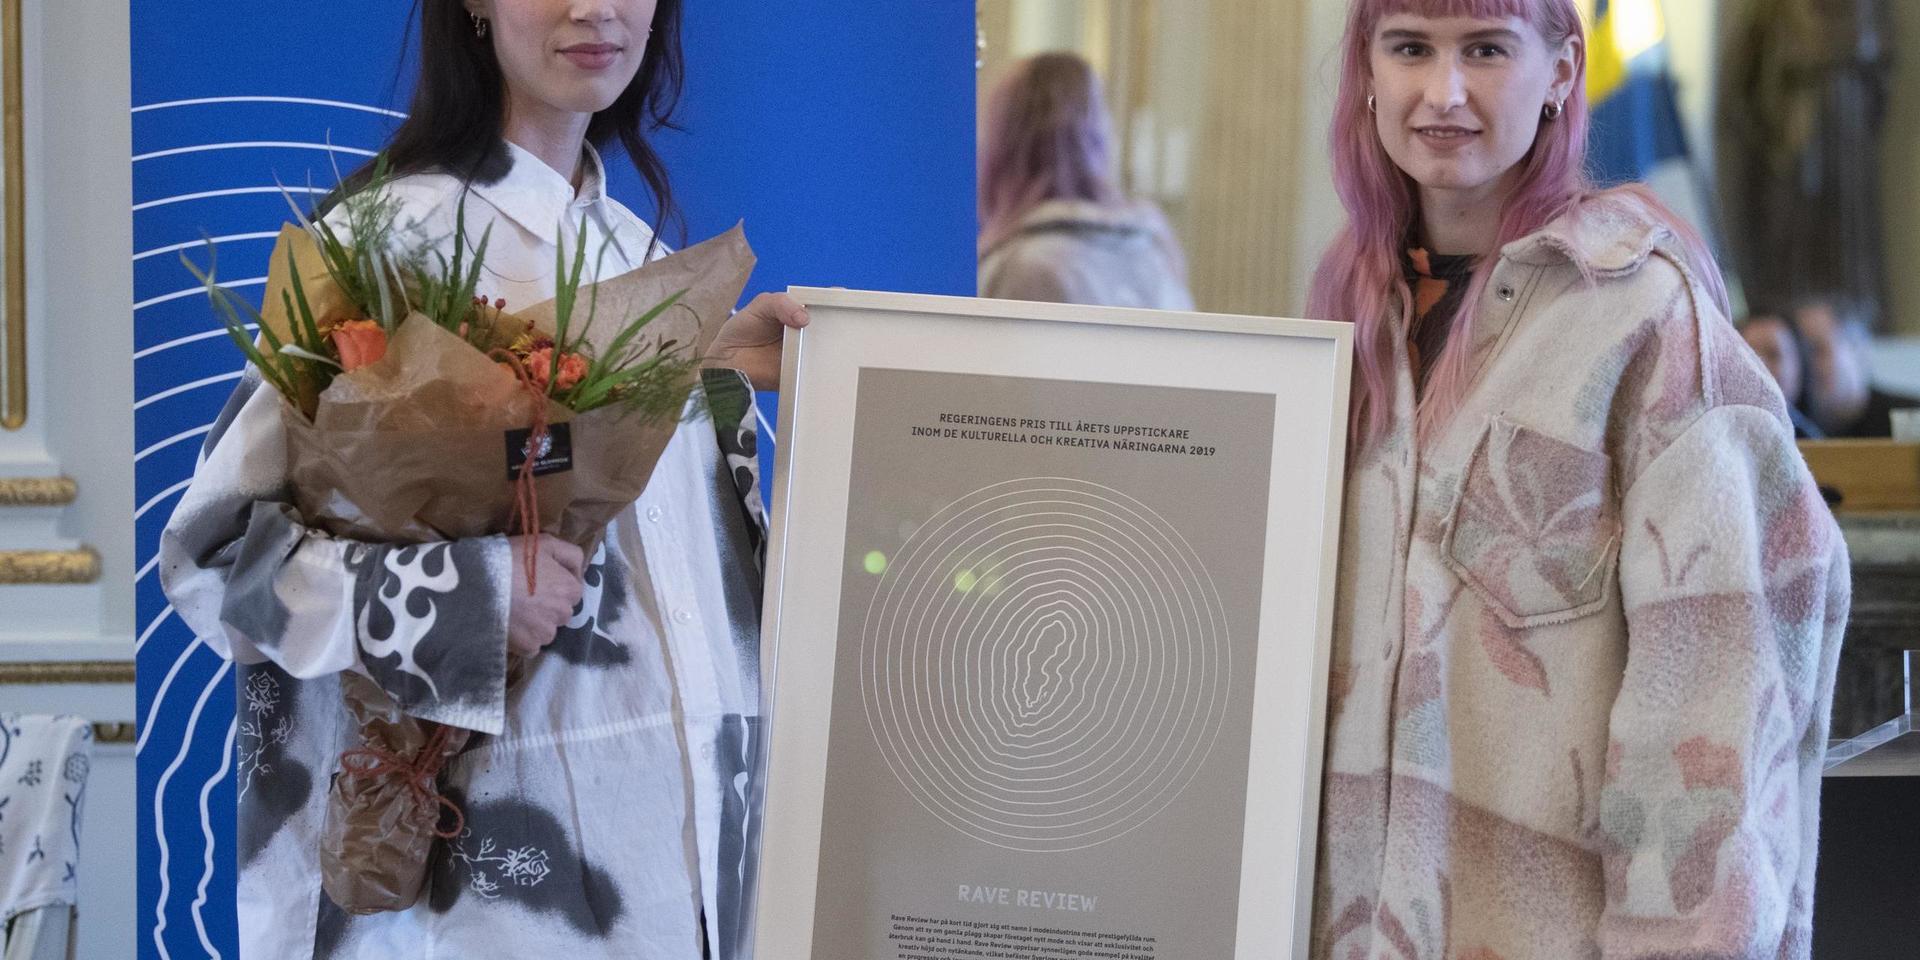 Livia Schück och Josephine Bergqvist från modeföretaget Rave Review utsågs till årets uppstickare inom de kulturella och kreativa näringarna 2019.